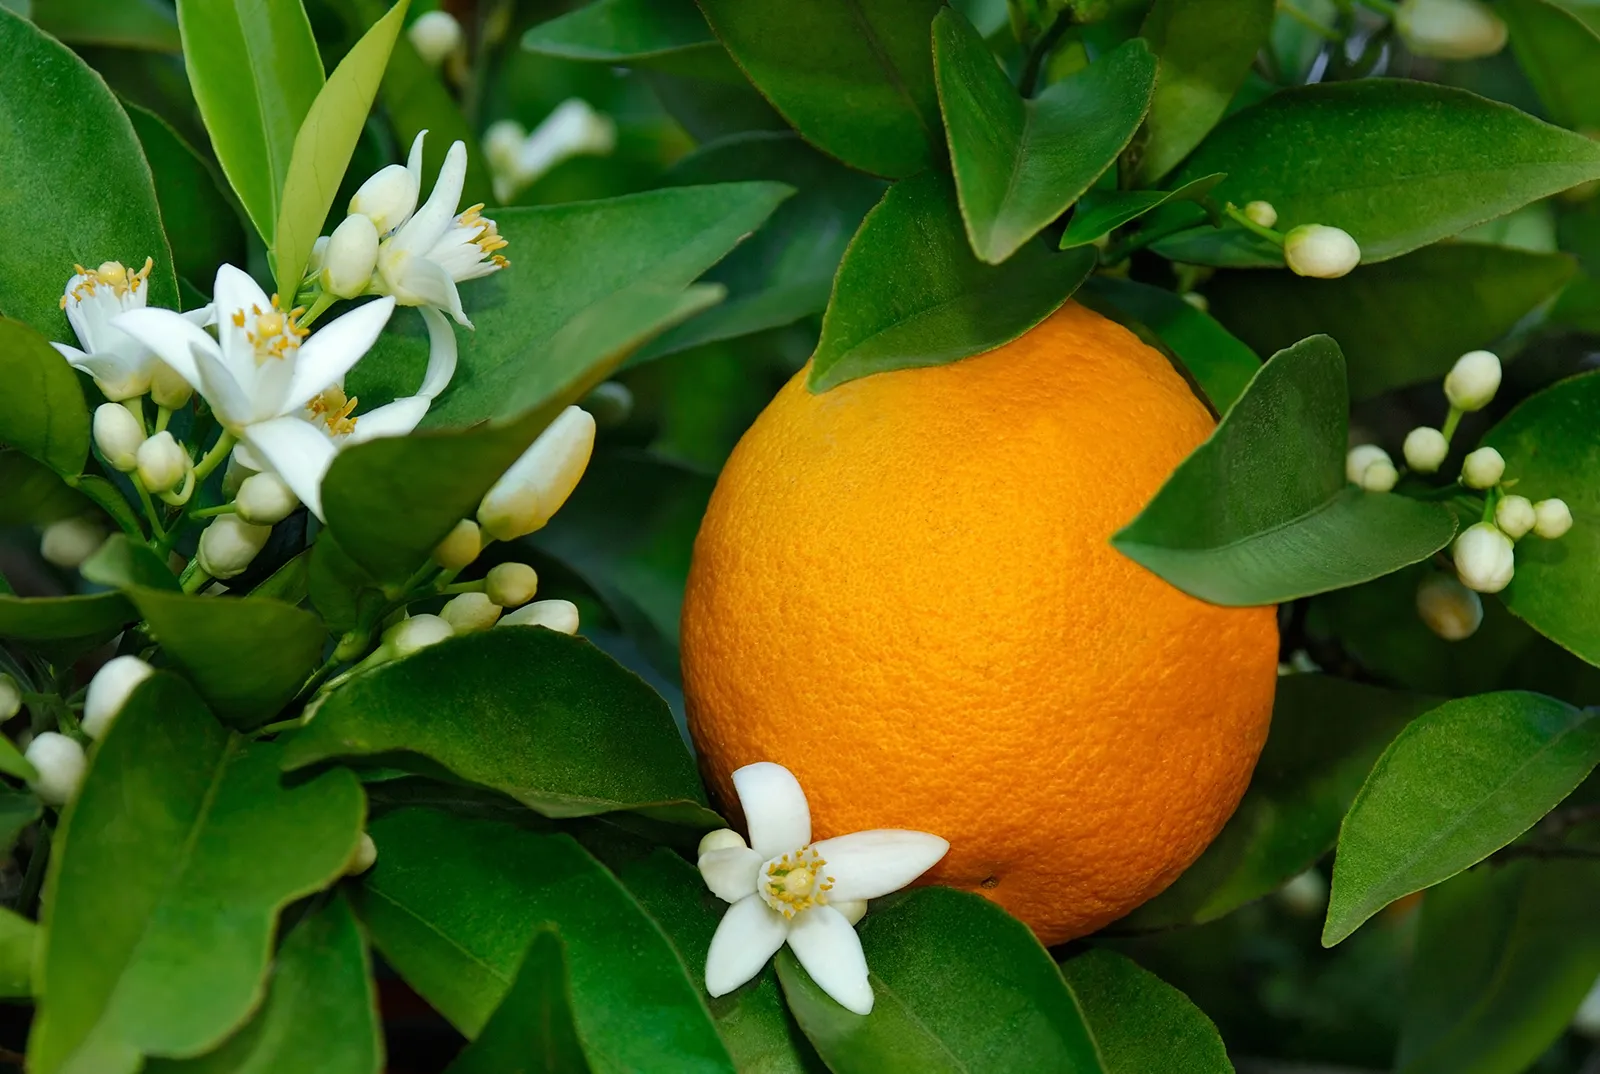 Coltivazione e irrigazione delle arance: un approccio economicamente efficiente